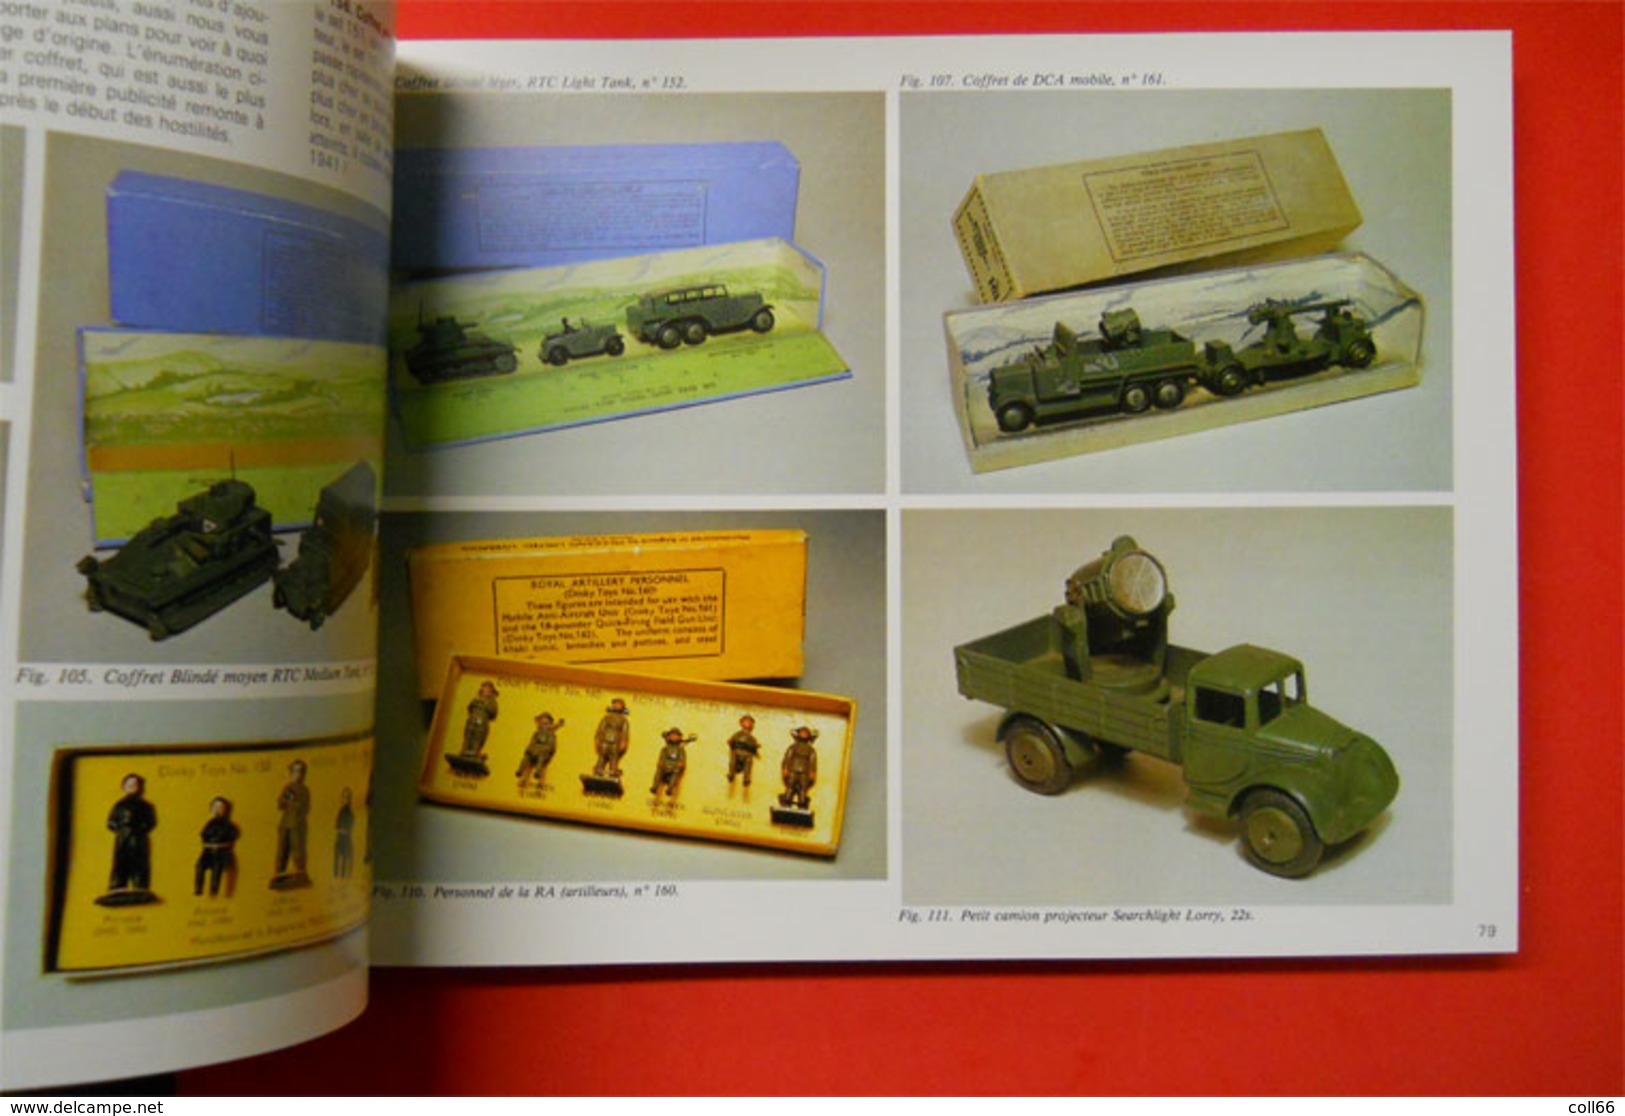 Livre en coffret Les Dinky Toys Anglais 1931-1979 384 pages par Mike et Sue Richardson voitures Miniatures jouets